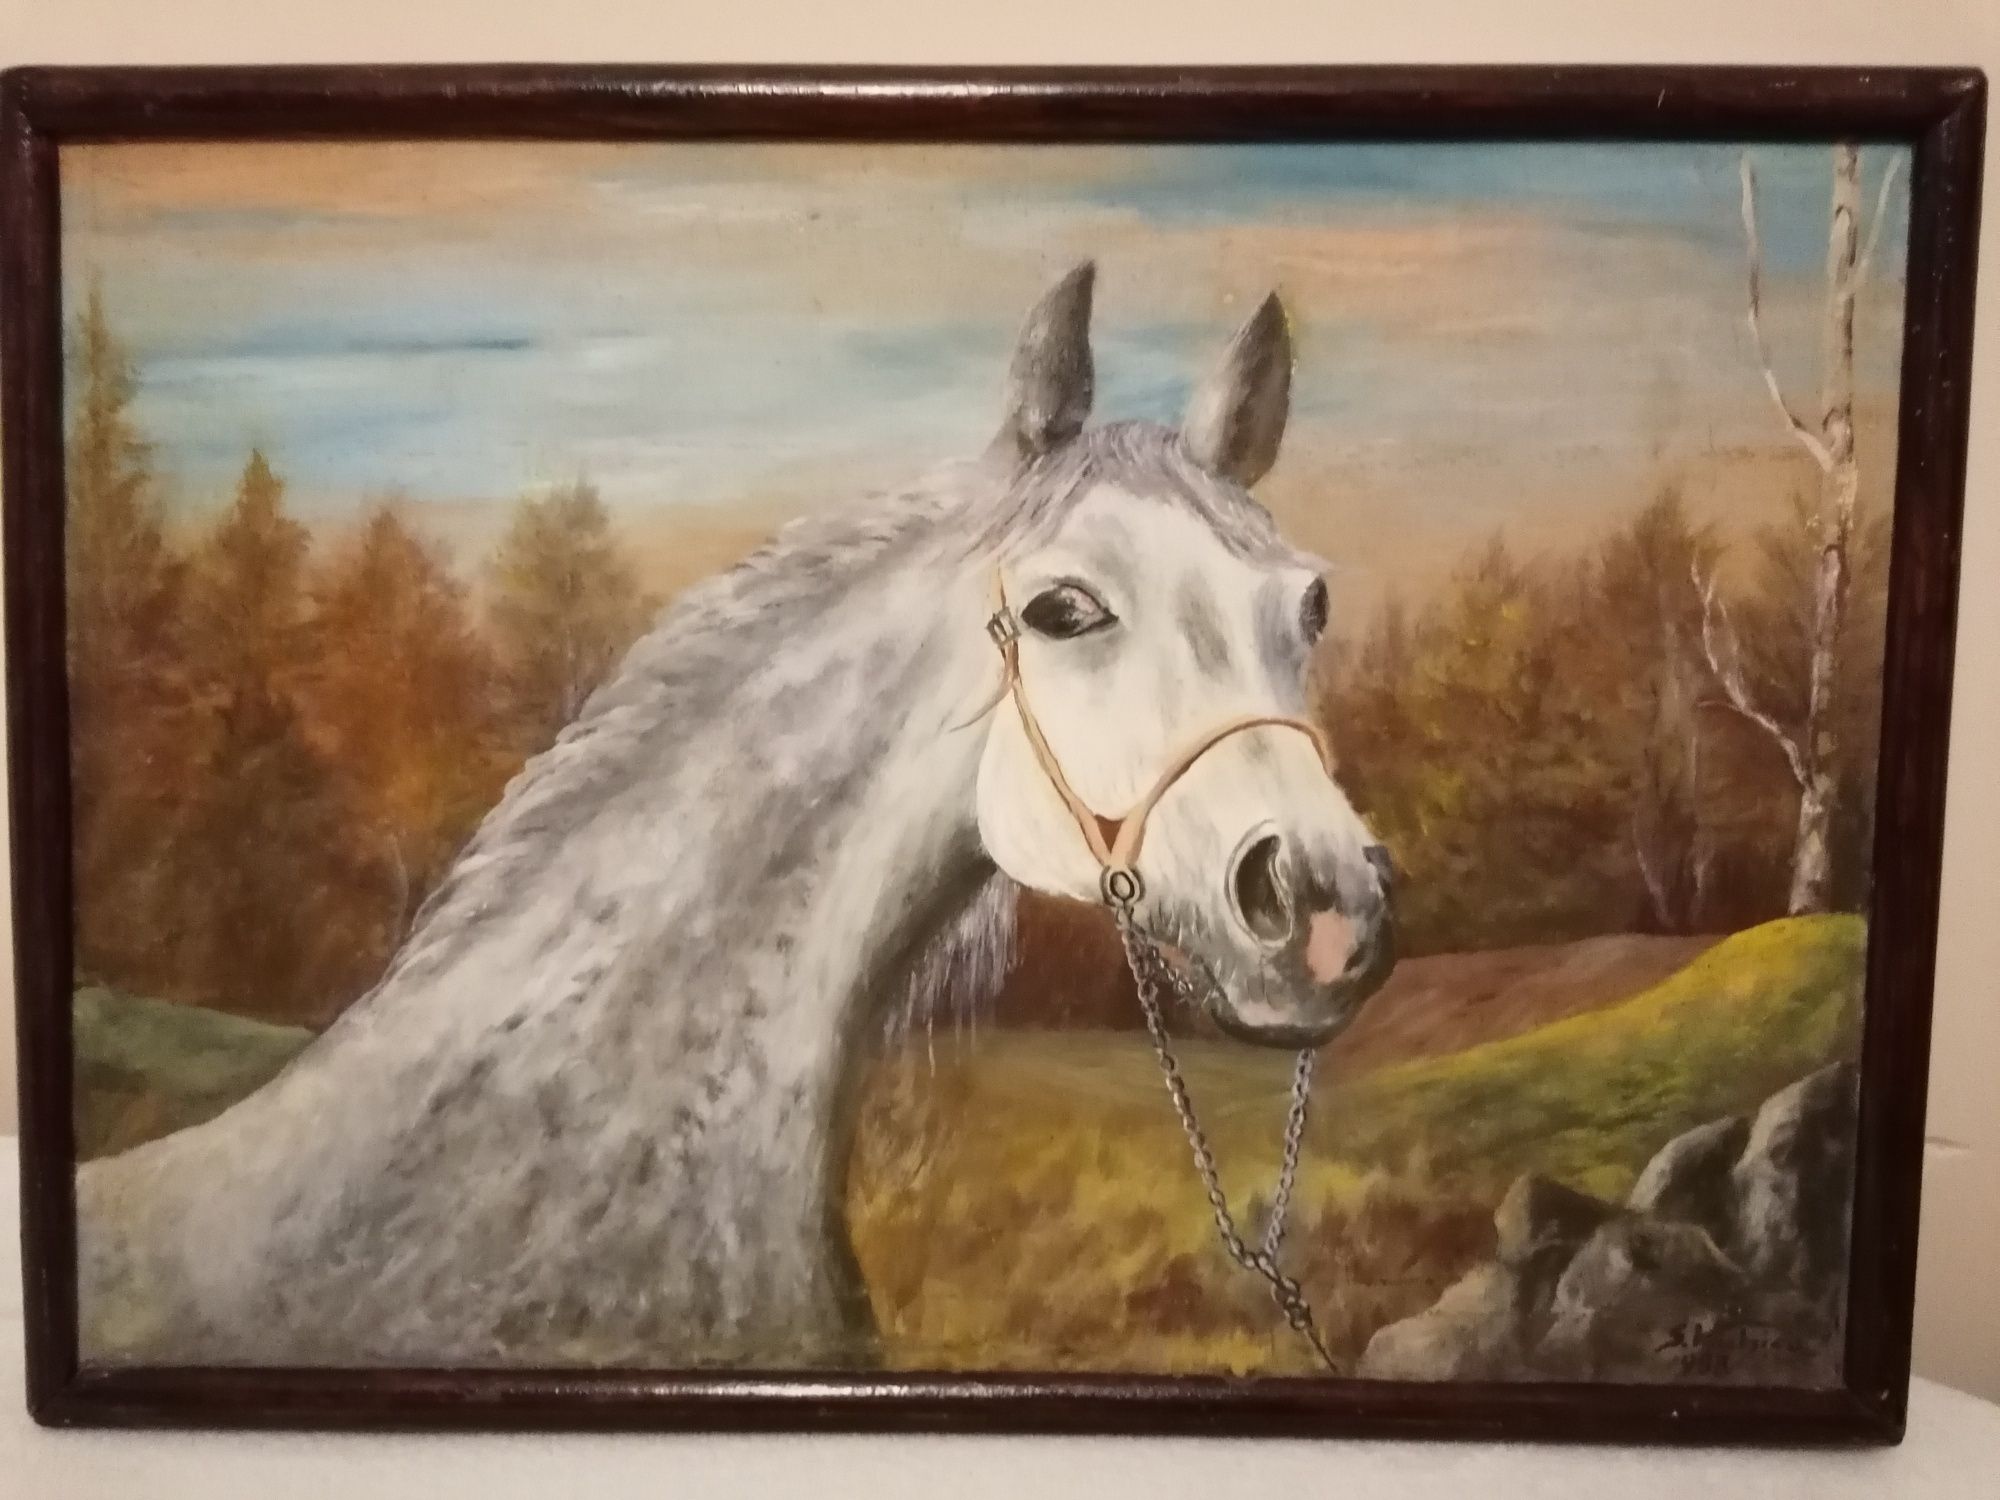 Obraz olejny duży szary koń 52 x 37 idealny na szara ścianę!